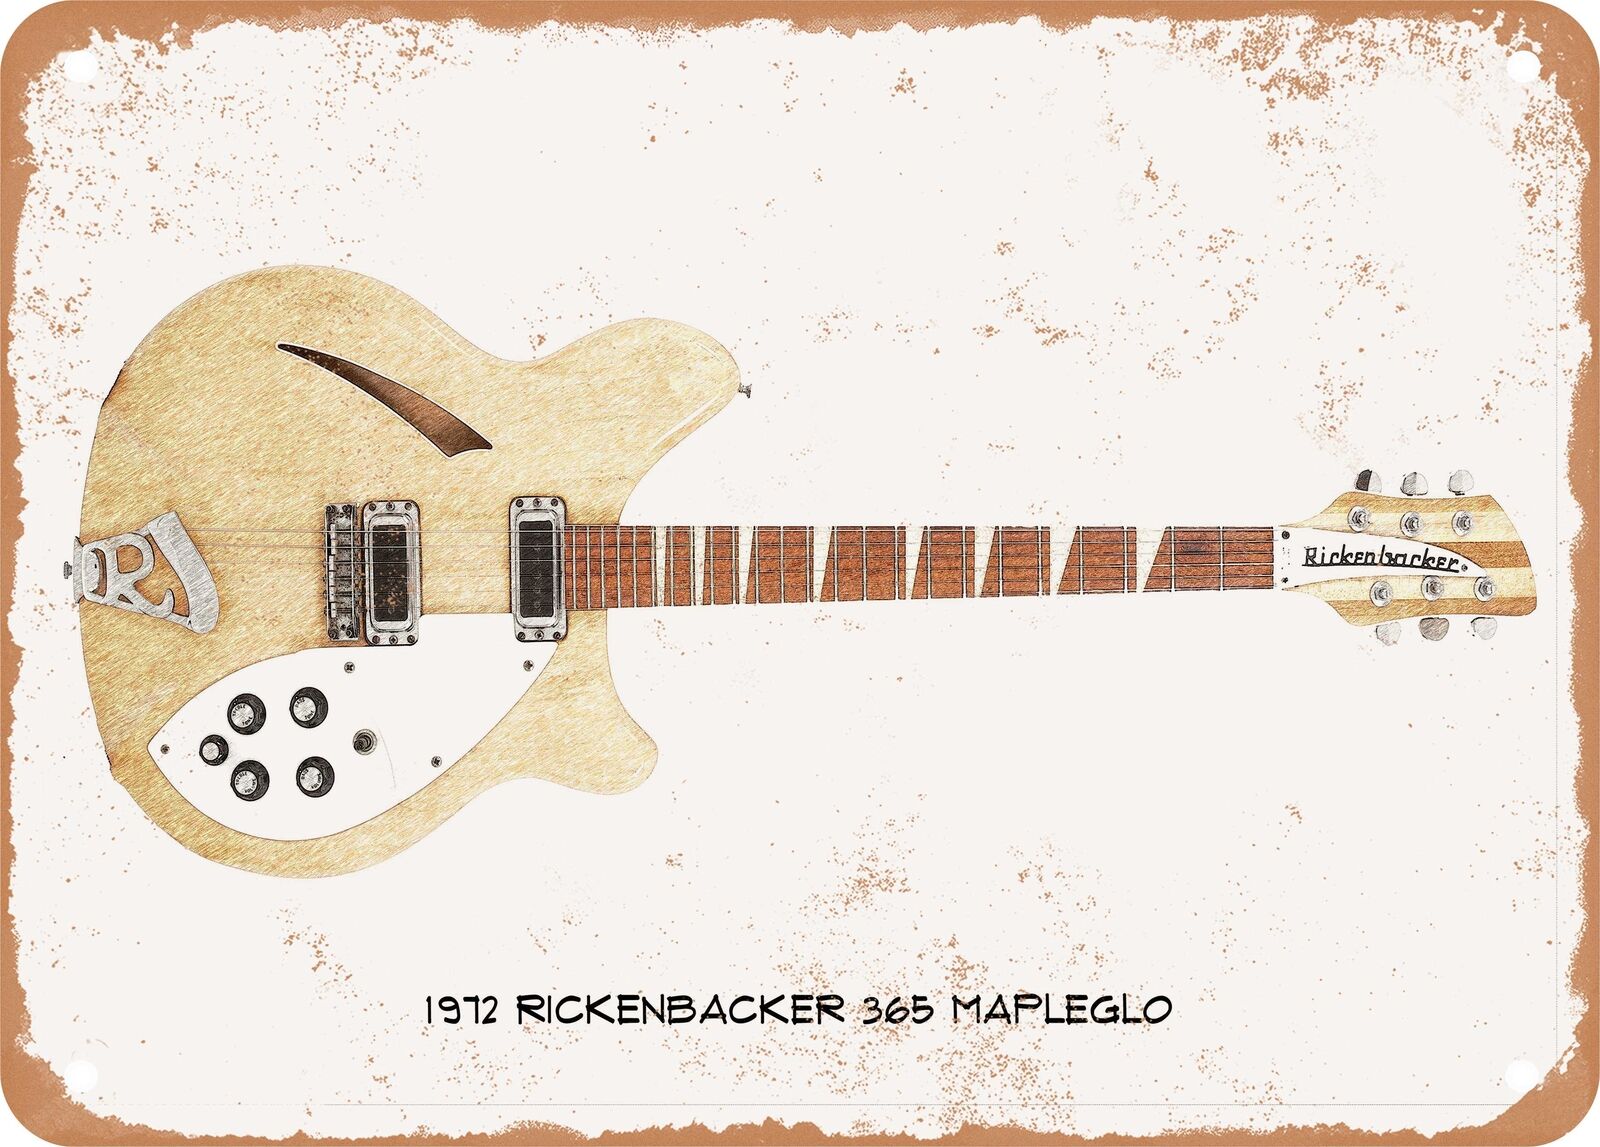 Guitar Art - 1972 Rickenbacker 365 Pencil Drawing - Rusty Look Metal Sign